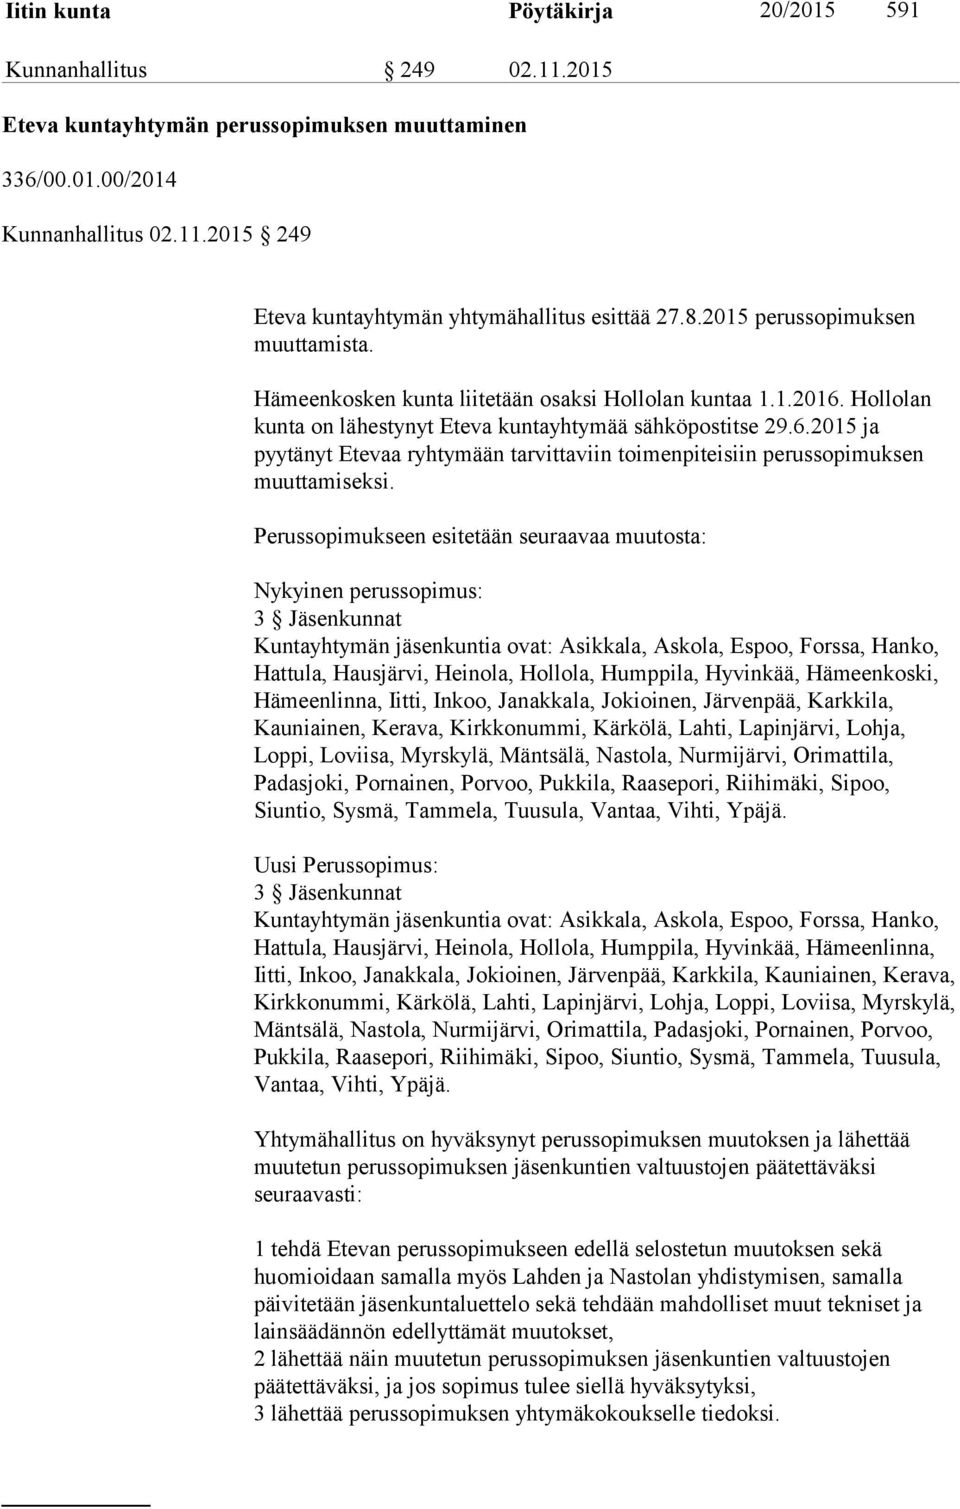 Perussopimukseen esitetään seuraavaa muutosta: Nykyinen perussopimus: 3 Jäsenkunnat Kuntayhtymän jäsenkuntia ovat: Asikkala, Askola, Espoo, Forssa, Hanko, Hattula, Hausjärvi, Heinola, Hollola,